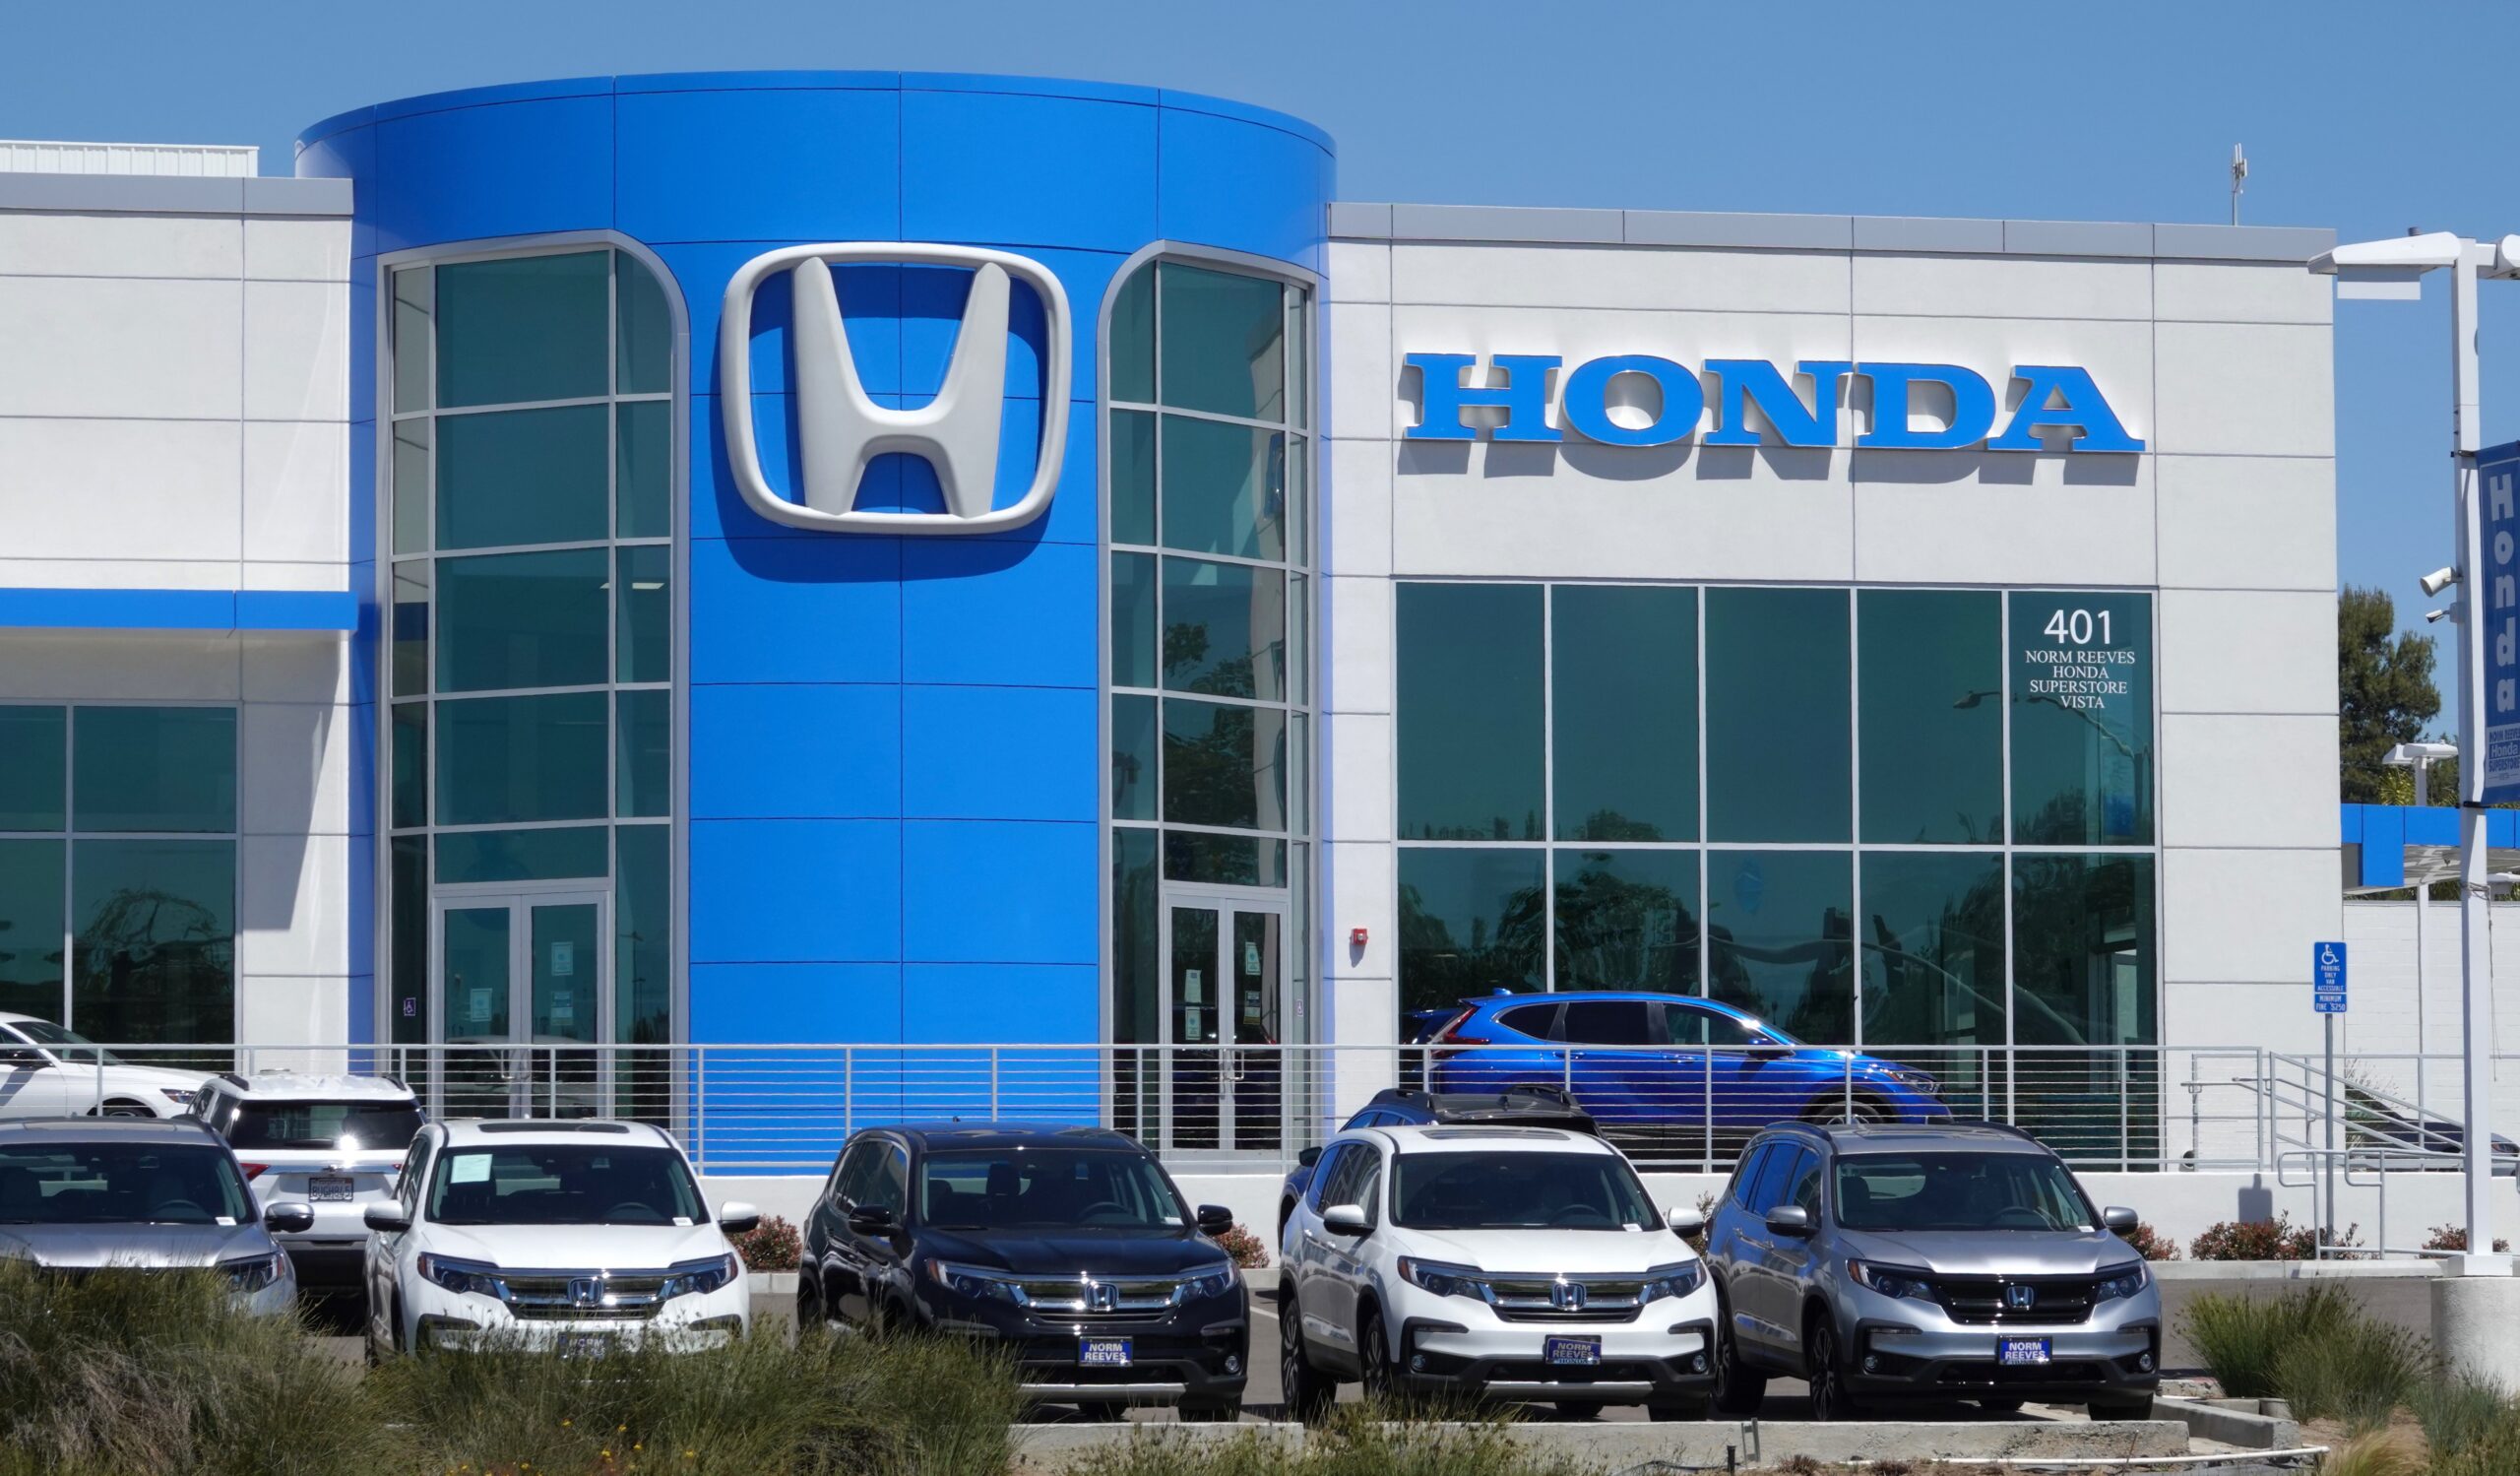 300,000+ Honda Accord Sedans සහ HR-V SUV රථ ආසන පටි ගැටළුව සඳහා නැවත කැඳවයි